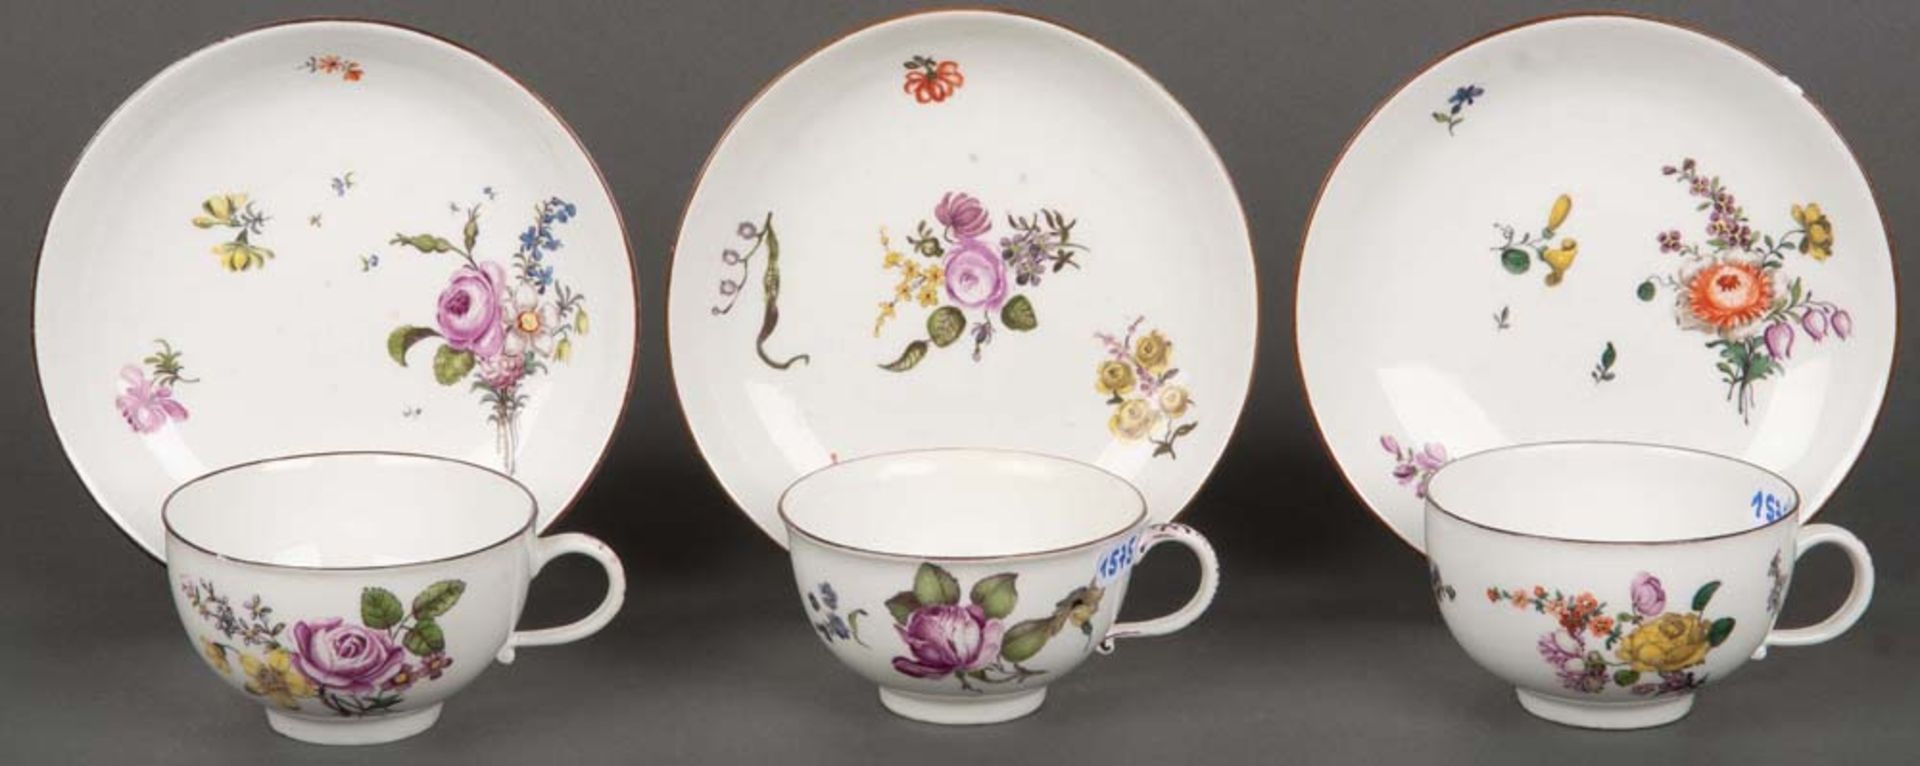 Drei Tassen mit Unterschalen. Meissen 1750. Porzellan, bunt bemalt mit Floraldekor ud